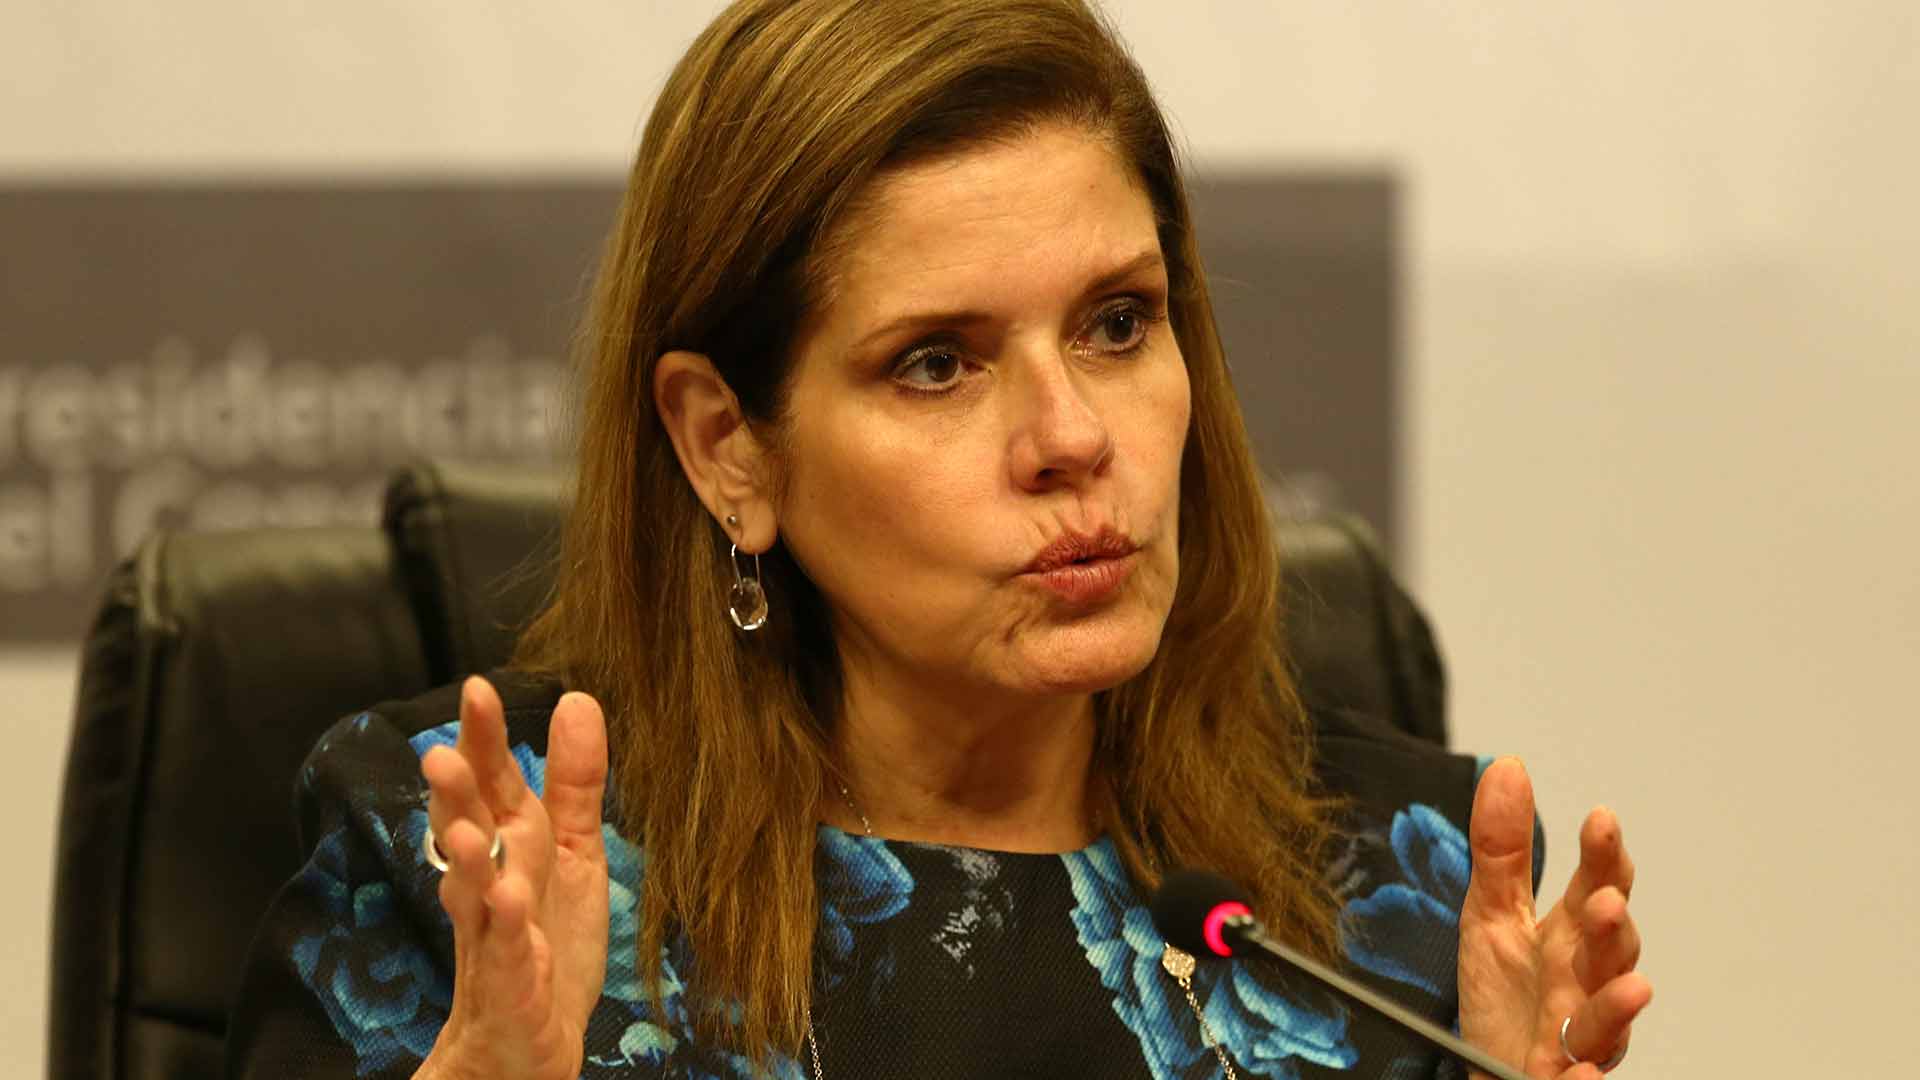 La primera ministra de Perú admite haber sido víctima de acoso machista